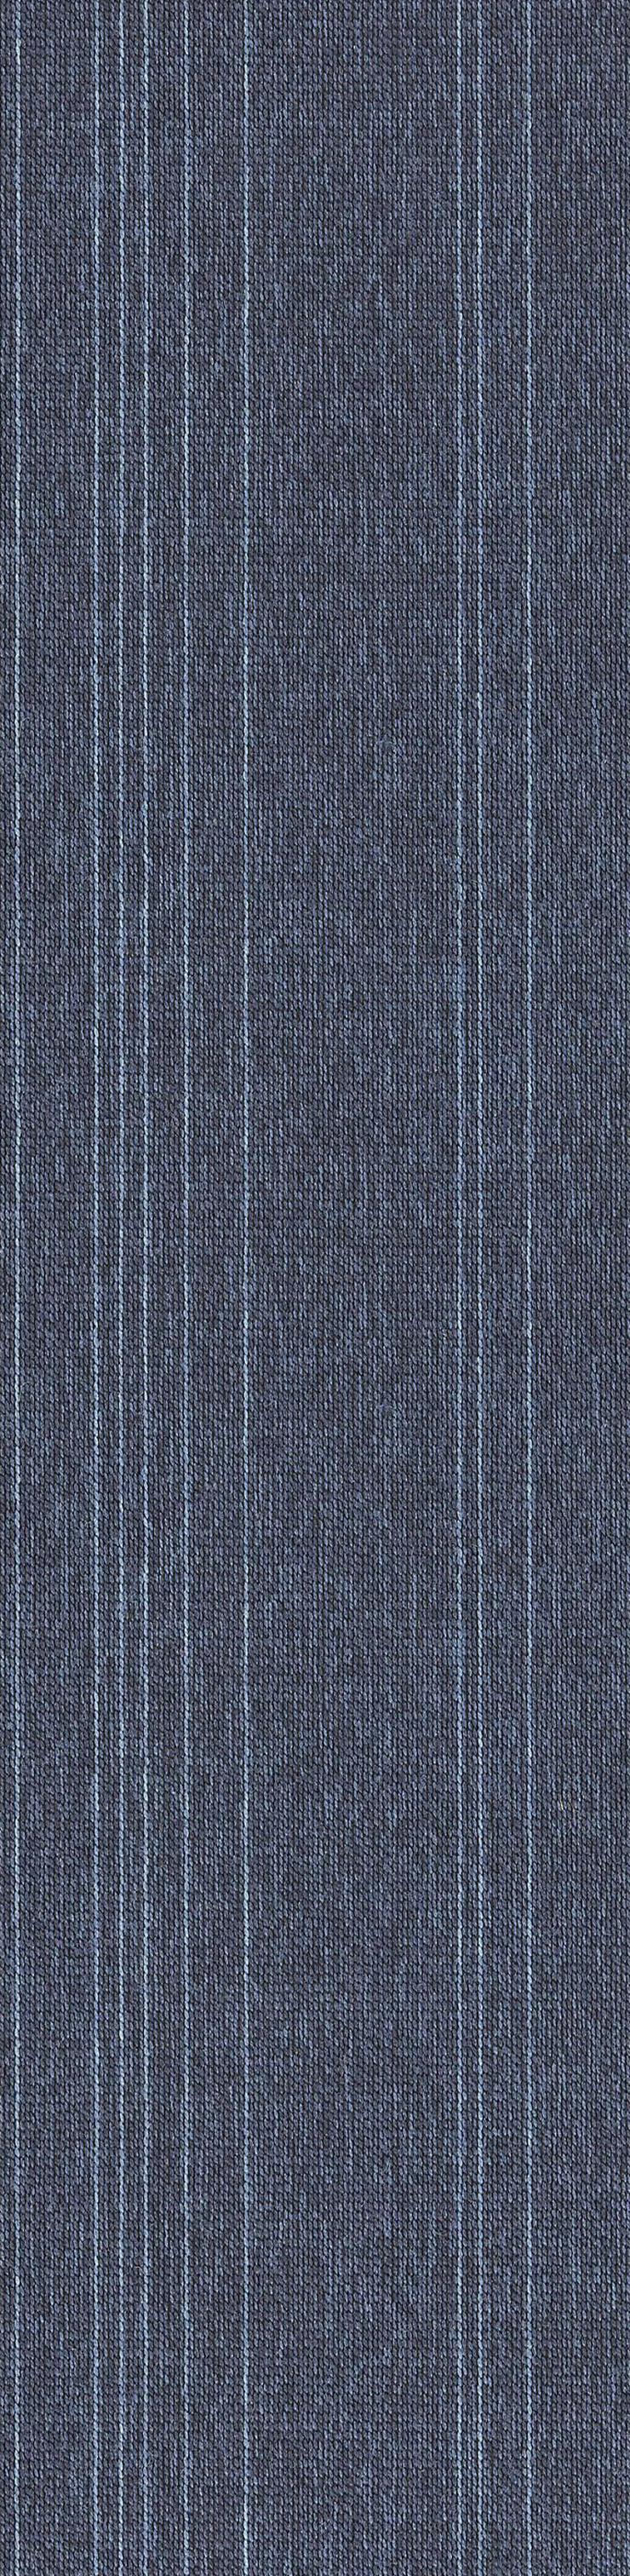 Blaue 'Laminat' Teppichfliesen 25 cm x 100 cm Sehr dekorativ! - Teppiche - Bild 1